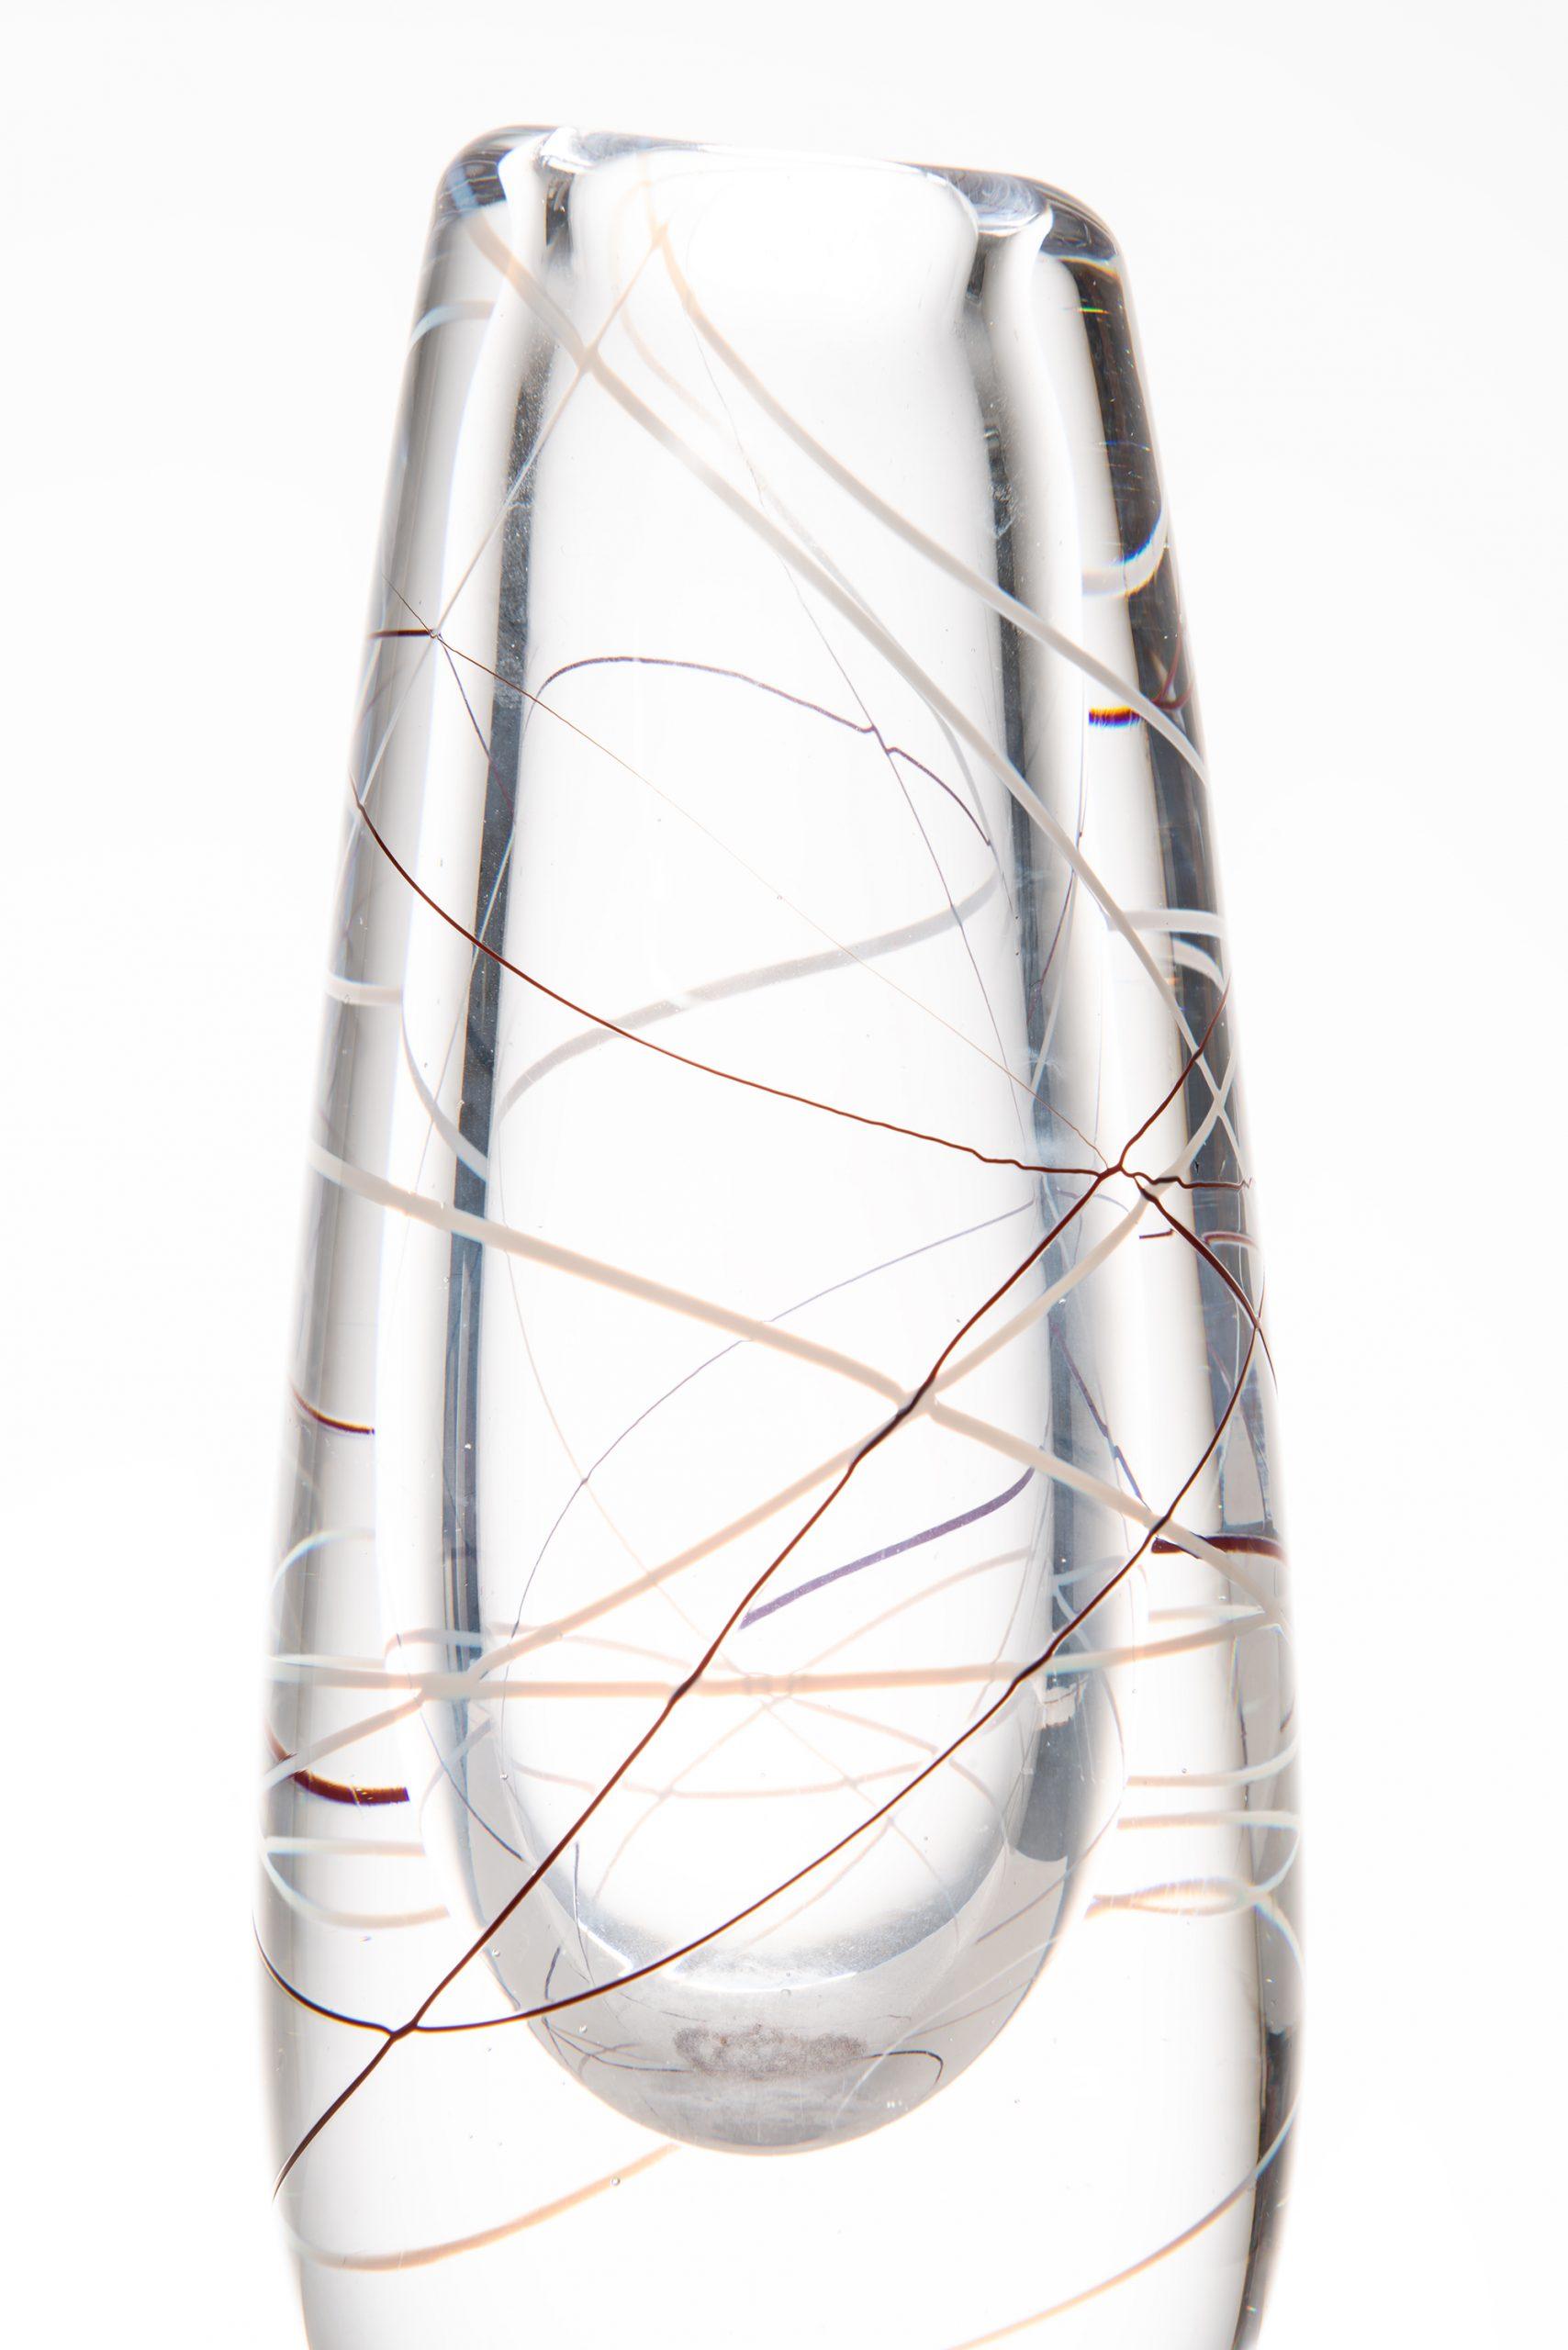 Glass vase designed by Vicke Lindstrand. Produced by Kosta in Sweden. Signed ‘Kosta LH 1088.